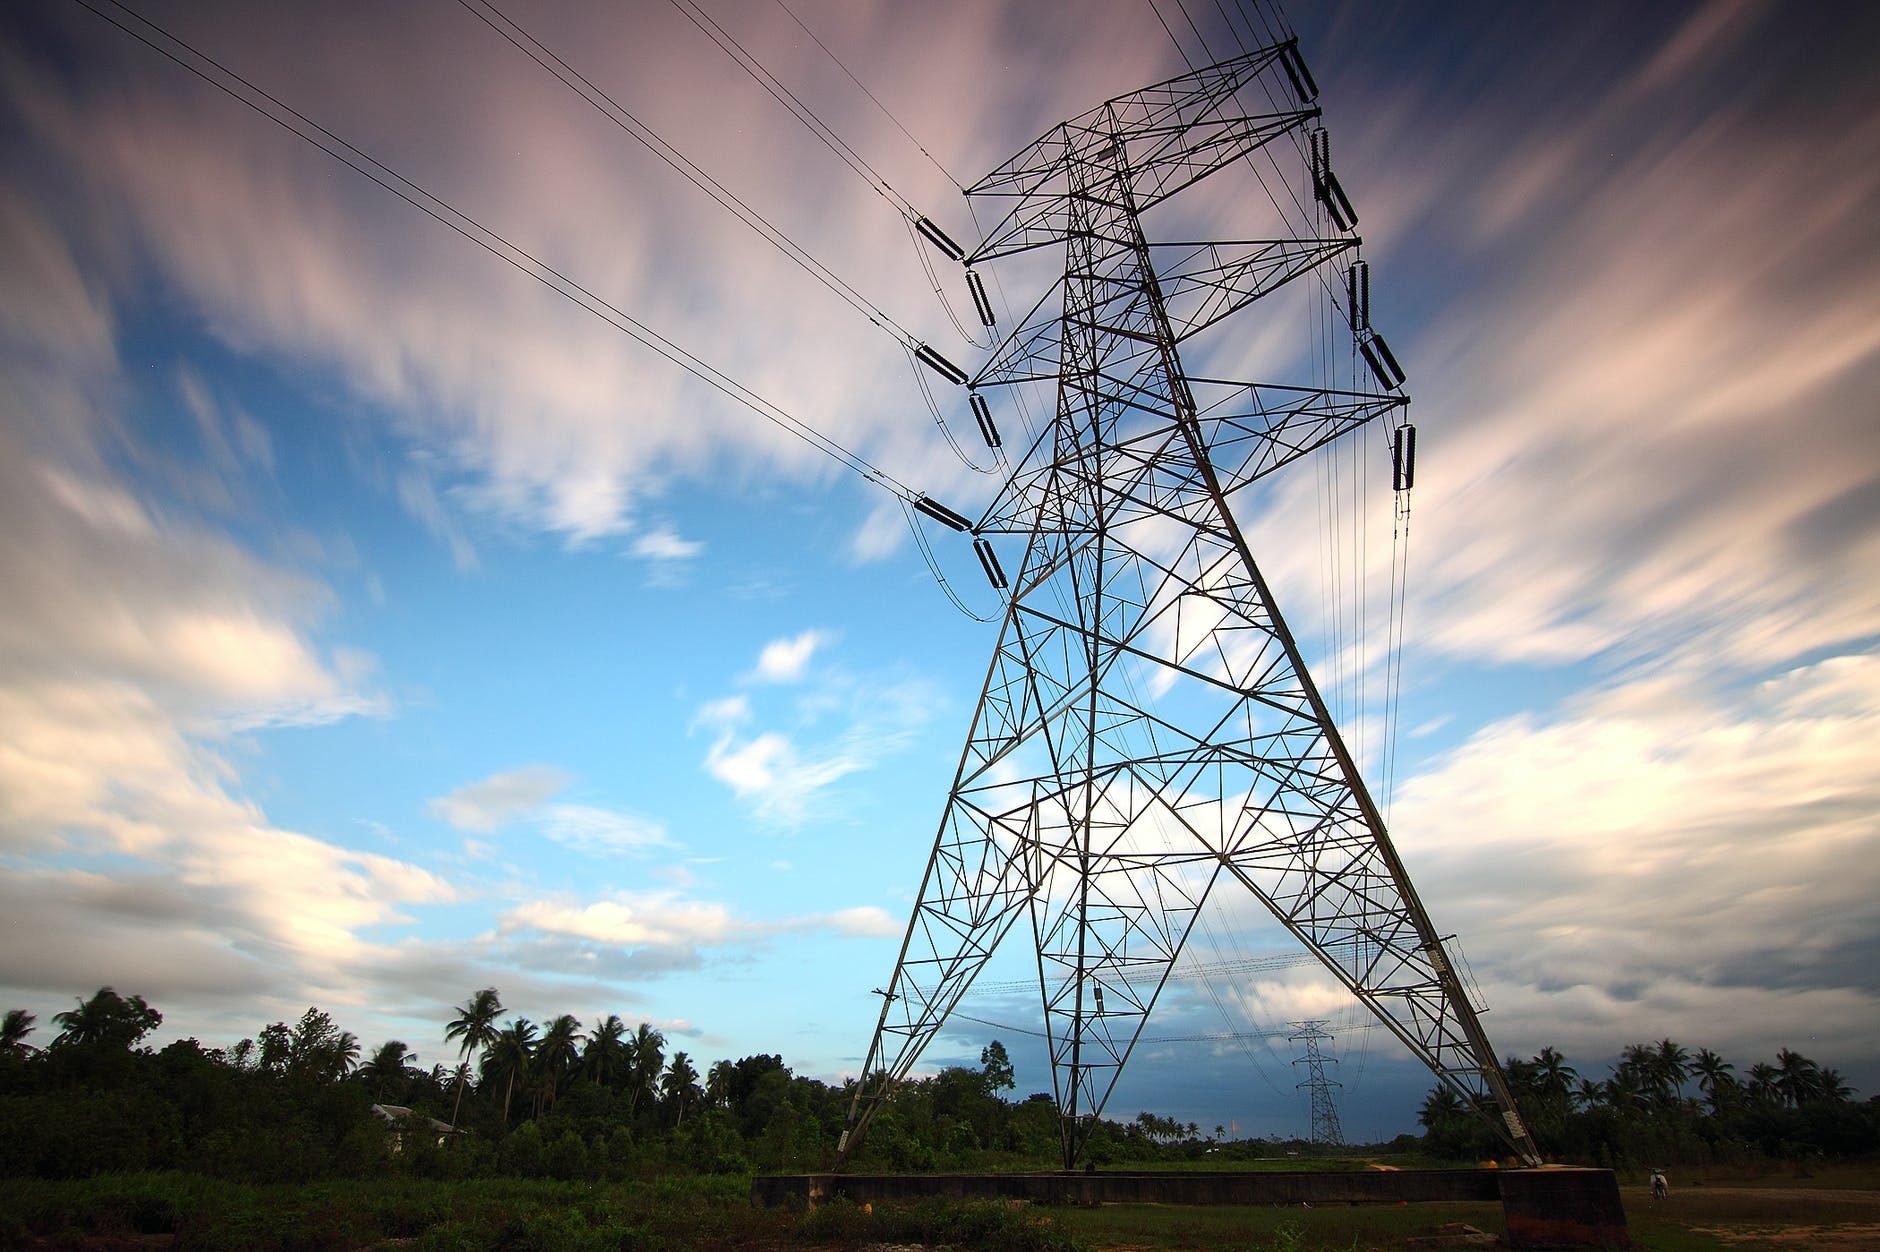 Autoritatea de Reglementare în Energie propune reguli noi privind racordarea pe bază de licitaţie a locurilor de producere a energiei electrice la reţelele de interes public